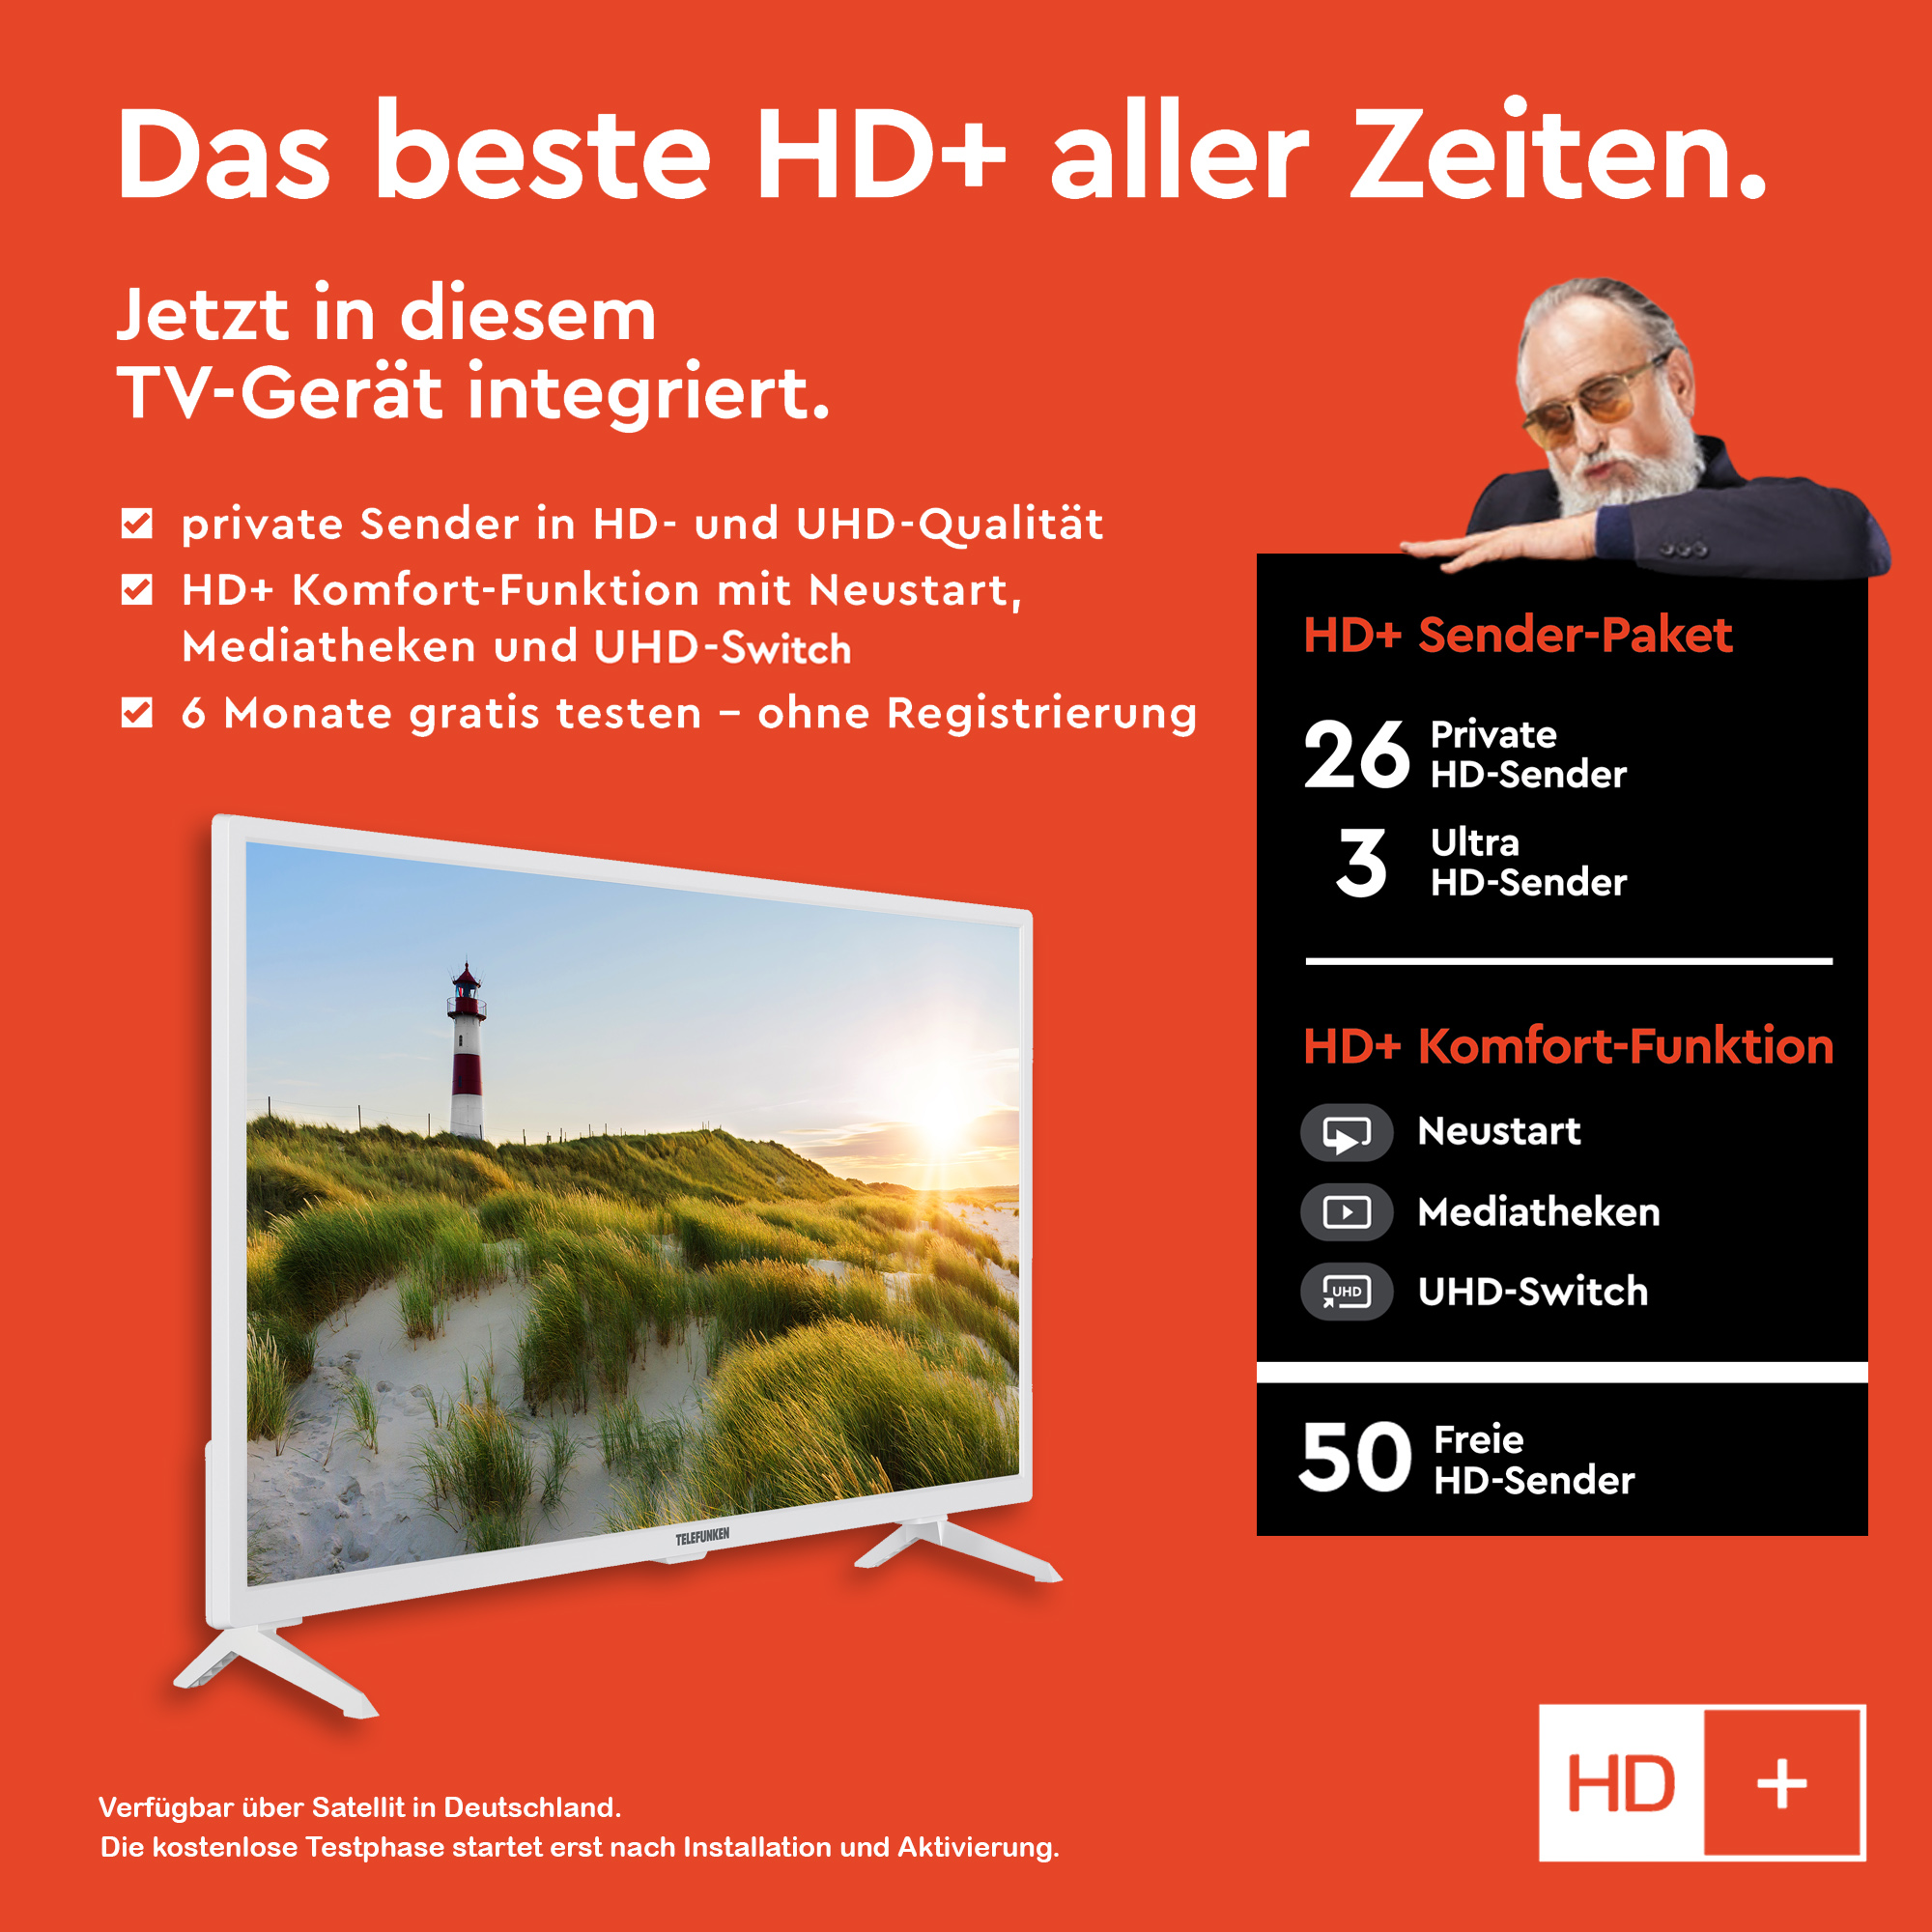 TELEFUNKEN XH32SN550S-W LED TV (Flat, SMART HD-ready, cm, 32 80 Zoll TV) 